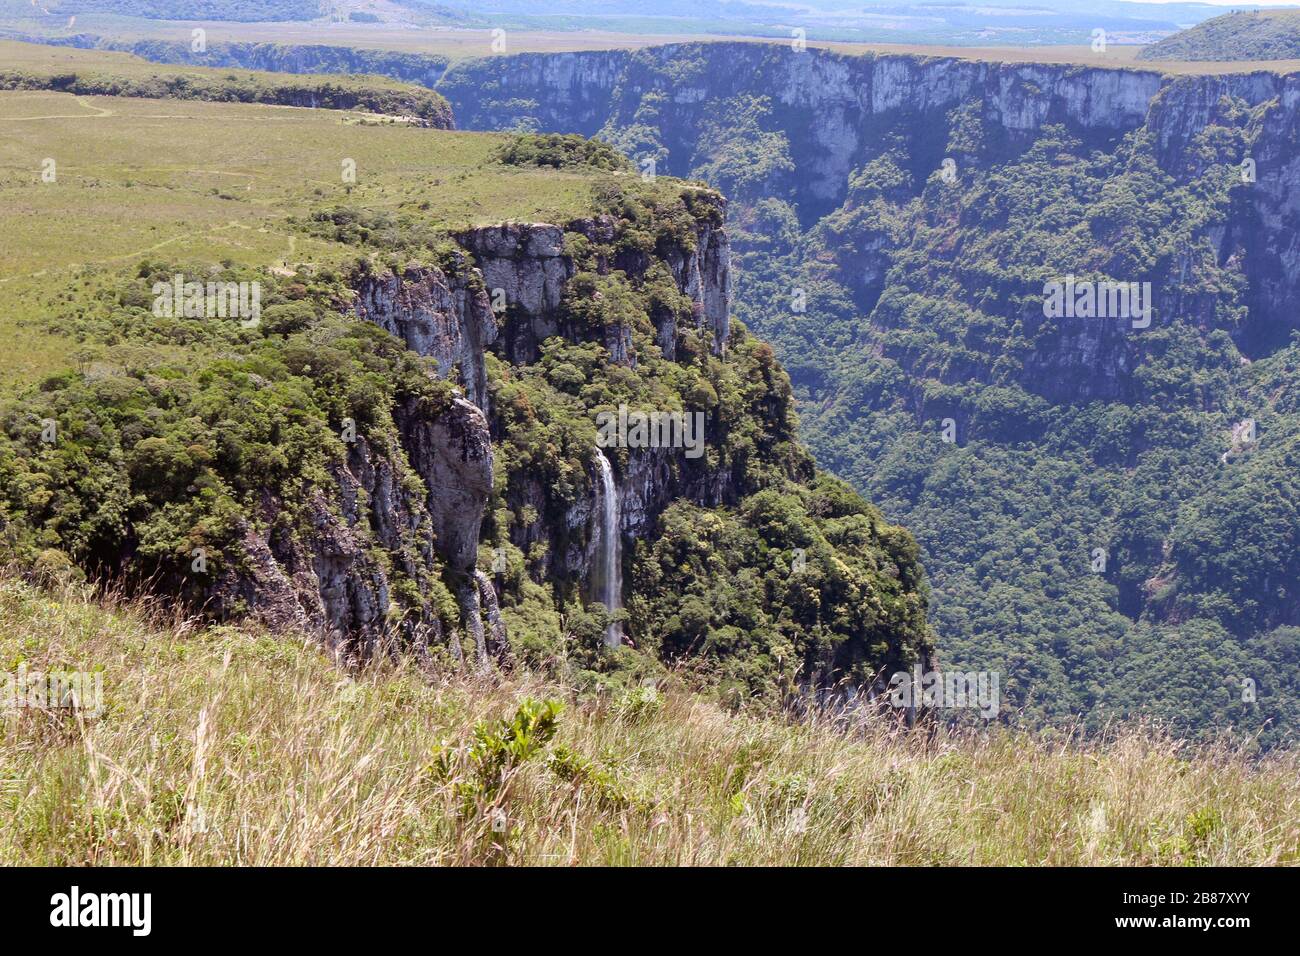 Das ist die Festung Aparados! Dort befindet sich der Serra-Geral-Nationalpark. Rio Grande do Sul, Brasilien, America Latina Stockfoto